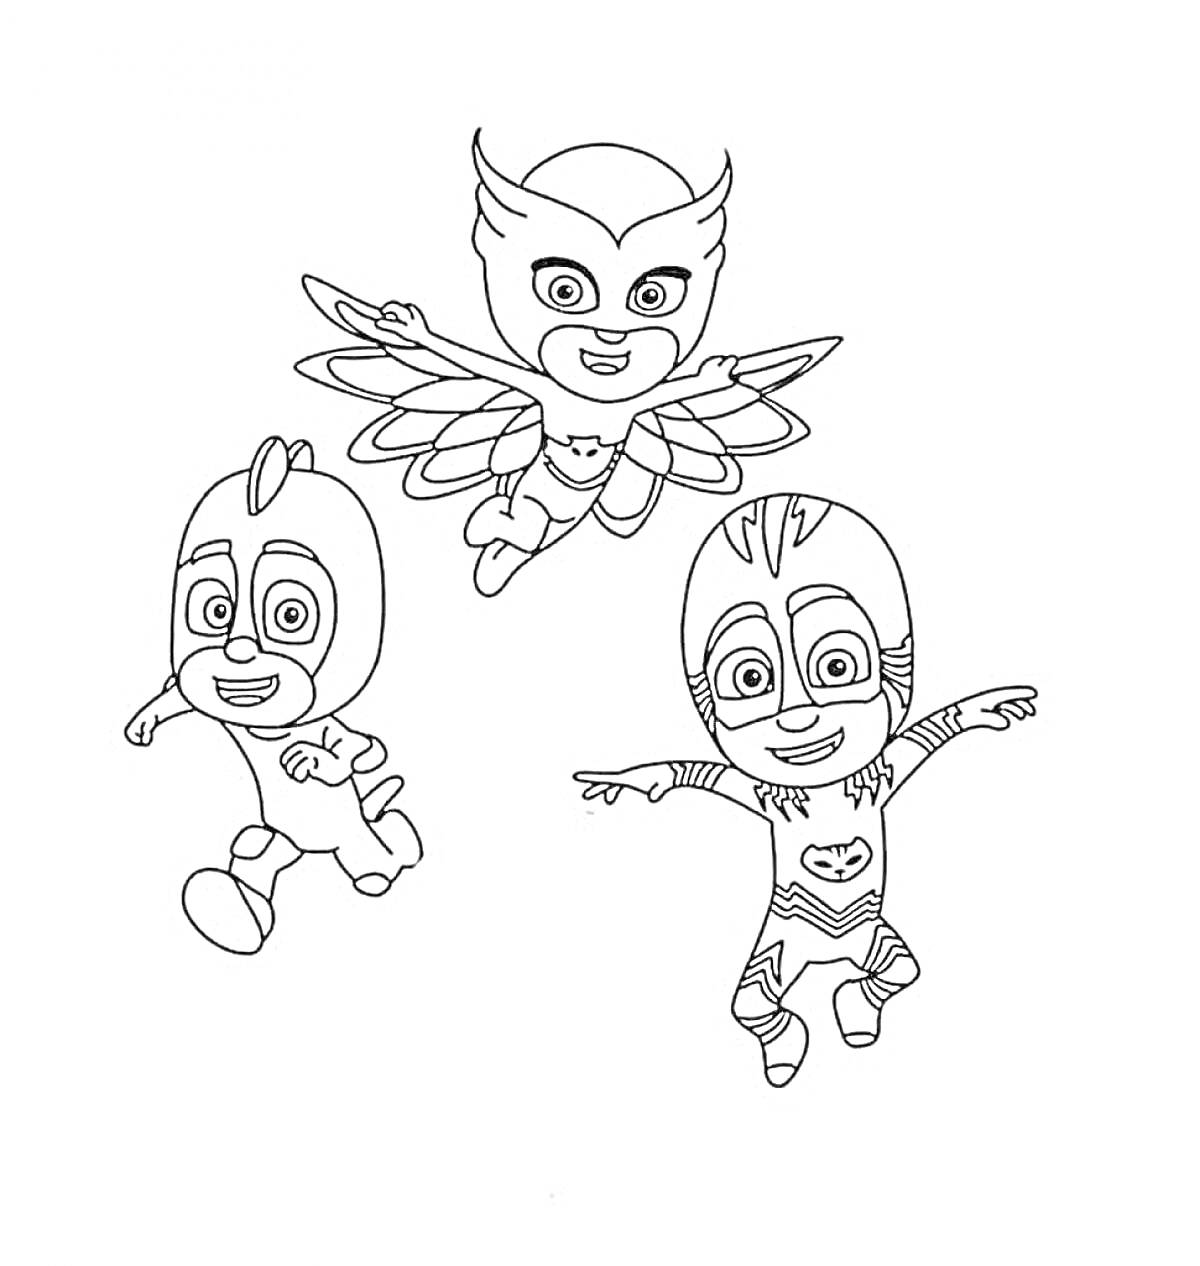 Три героя в масках: Совиный крылатый герой, маскированный летающий герой, маскированный бегающий герой